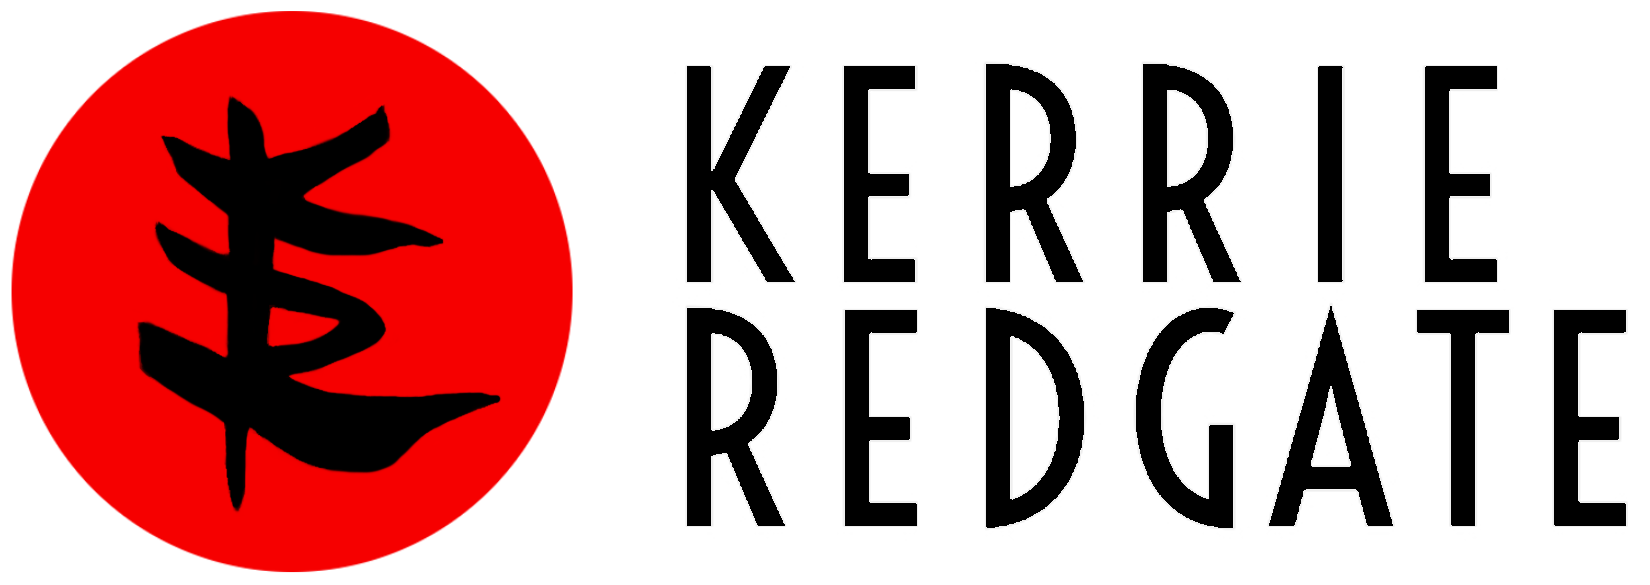 Kerrie Redgate logomark